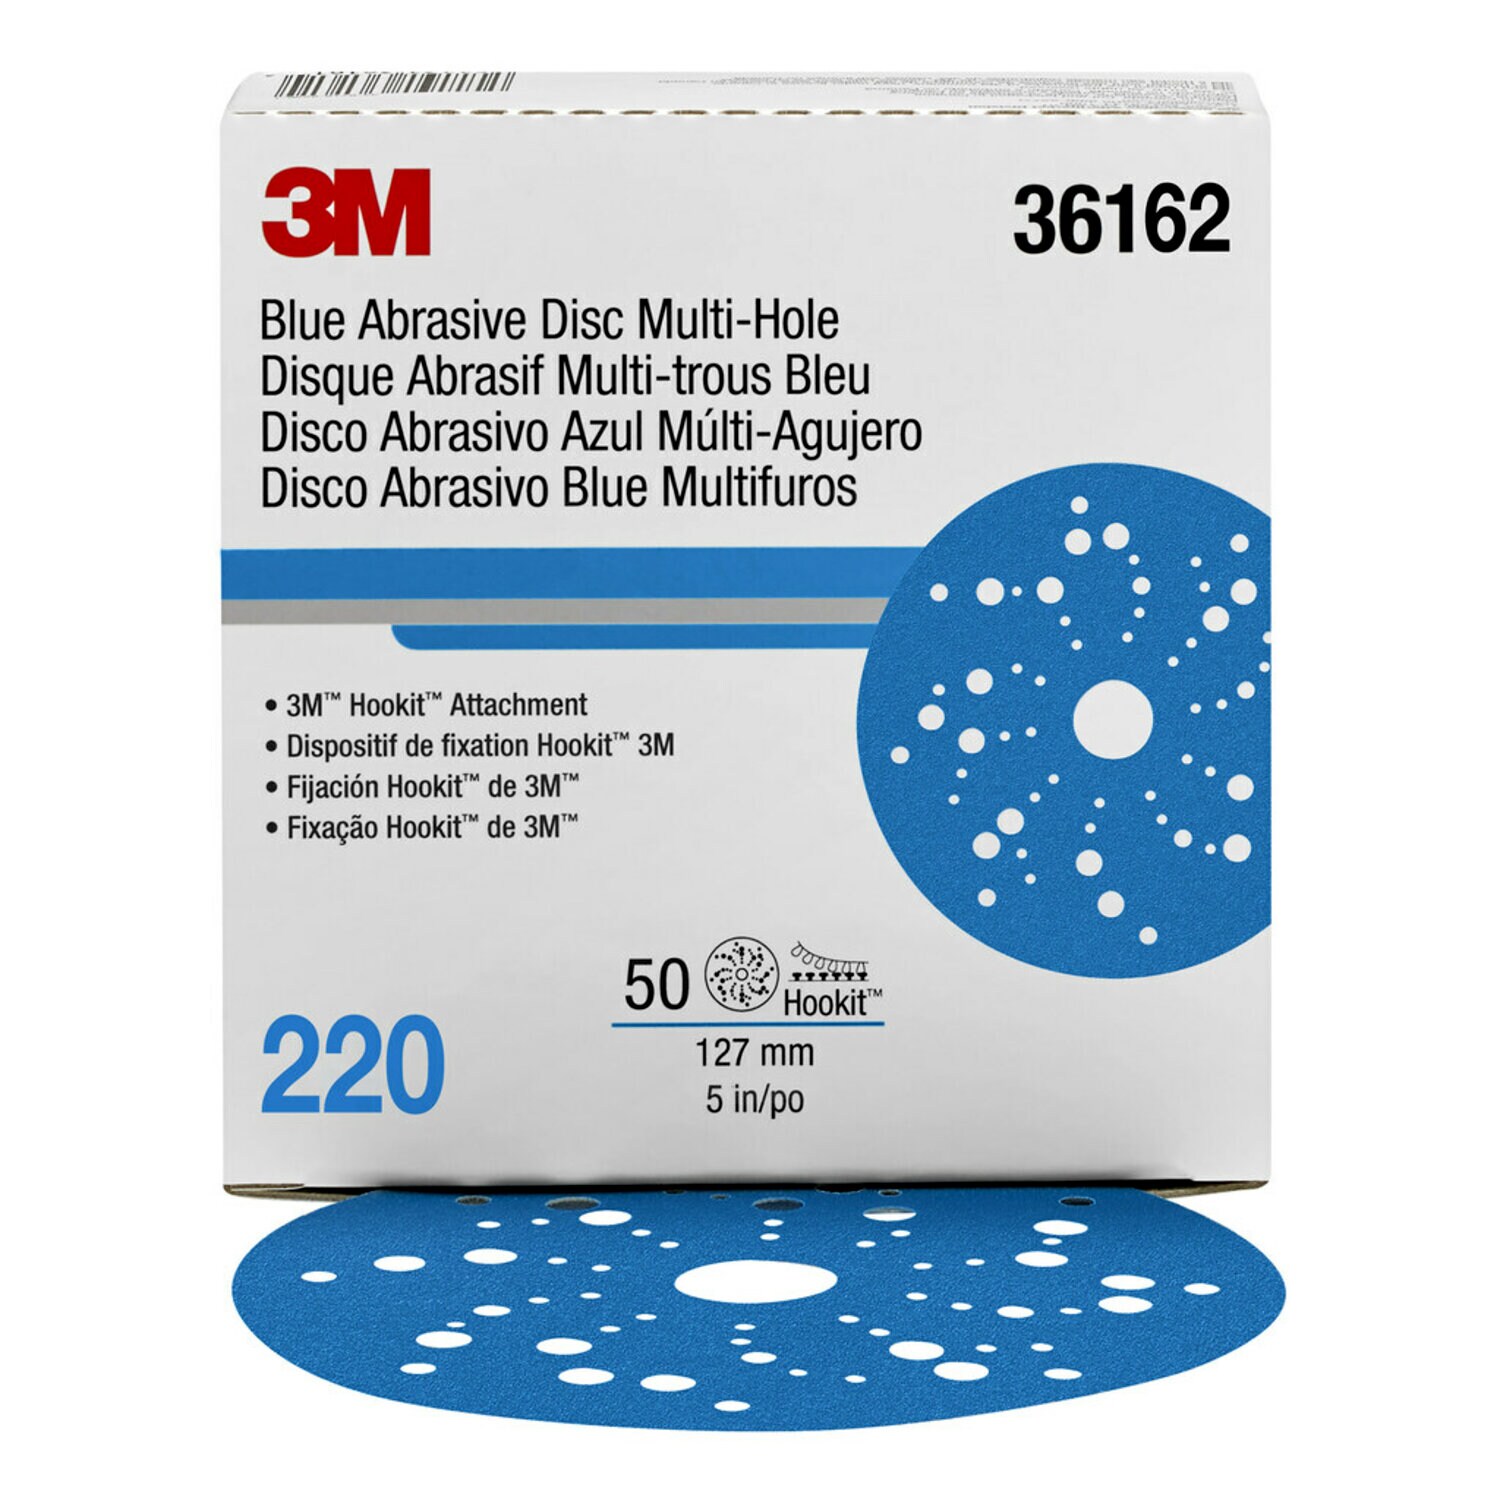 7100091236 - 3M Hookit Blue Abrasive Disc Multi-hole, 36162, 5 in, 220 grade, 50
discs per carton, 4 cartons per case